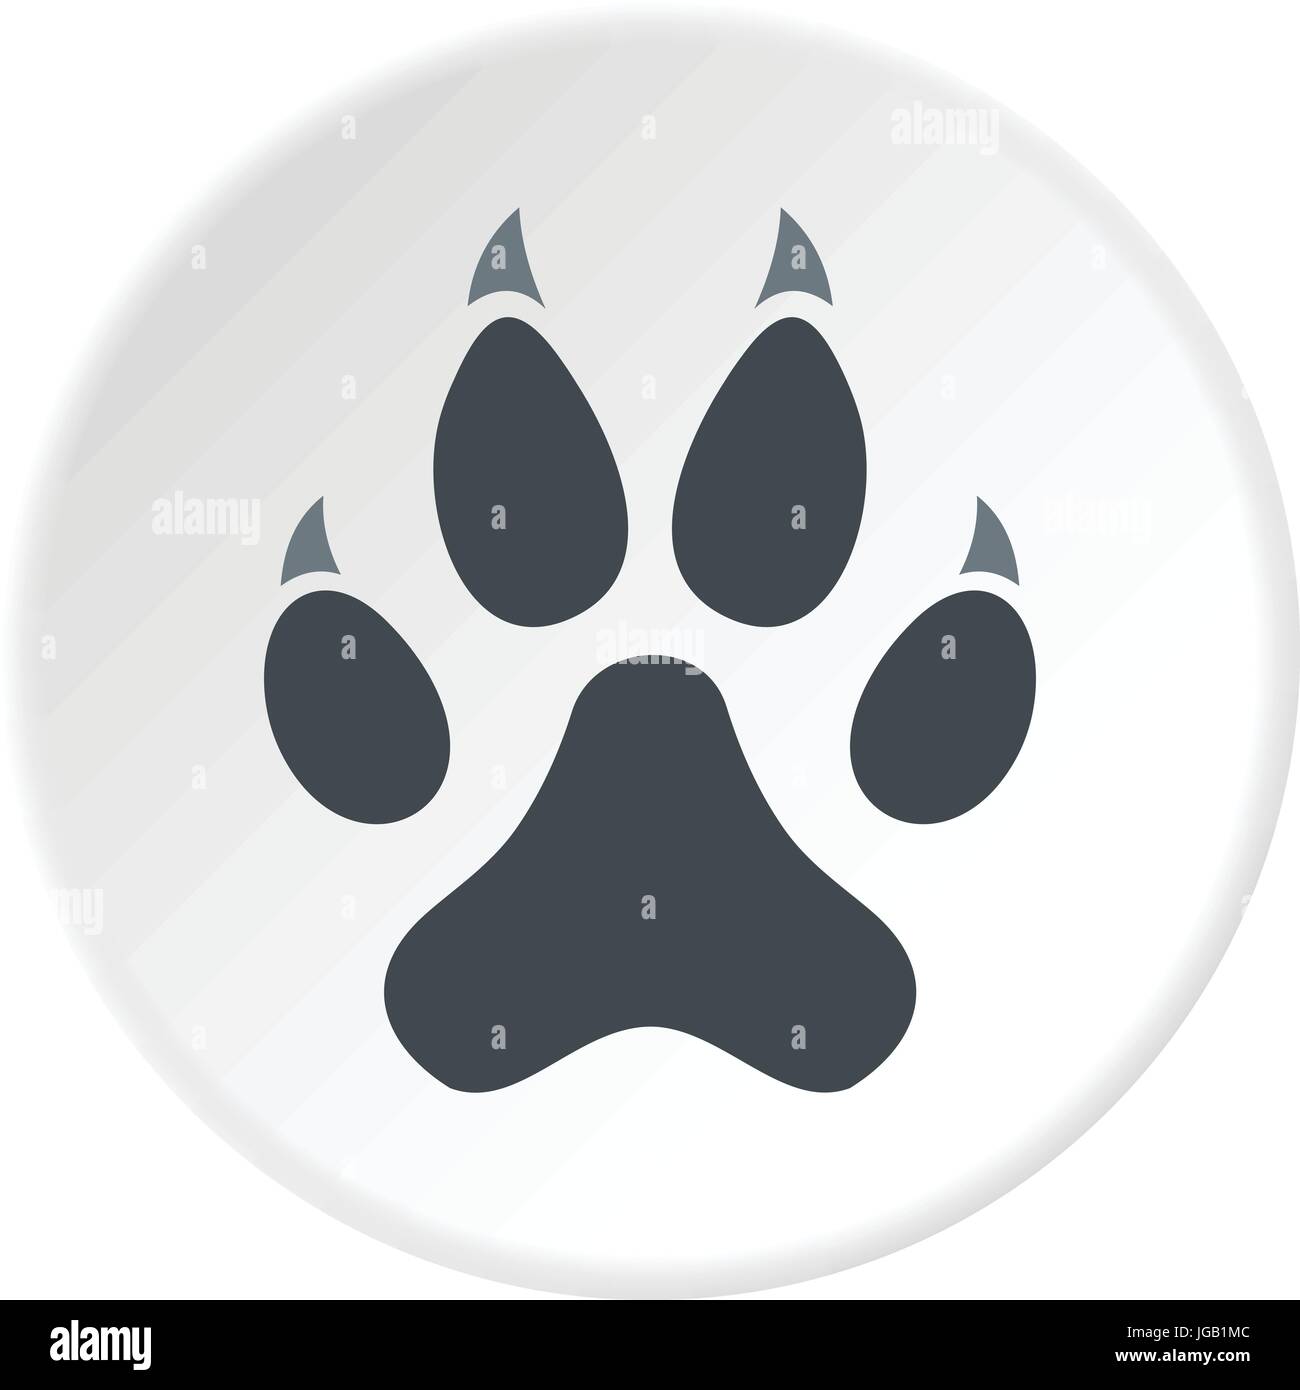 Tordenvejr Spiller skak Søgemaskine optimering Cat paw icon circle Stock Vector Image & Art - Alamy